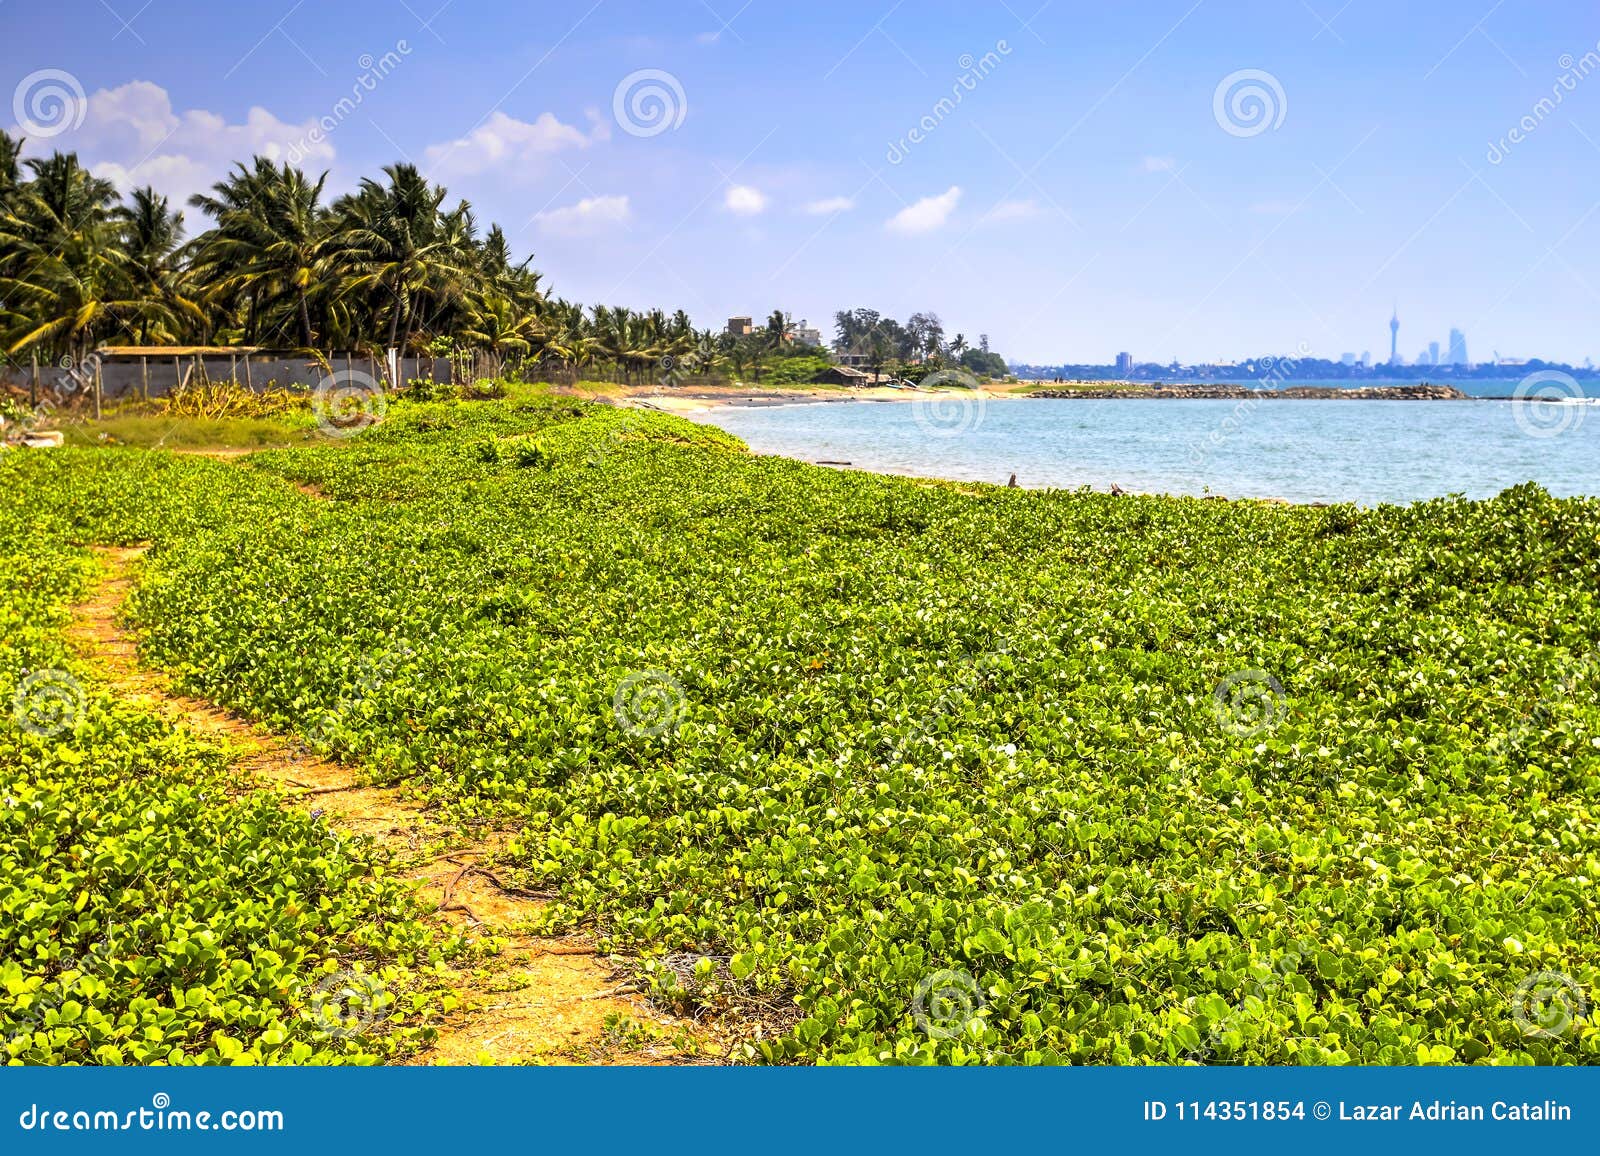 Praia de Palliyawatta, Sri Lanka. Praia de Palliyawatta em Wattala com águas claras e as areias douradas No fundo você pode observar os arranha-céus da cidade de Colombo, Sri Lanka